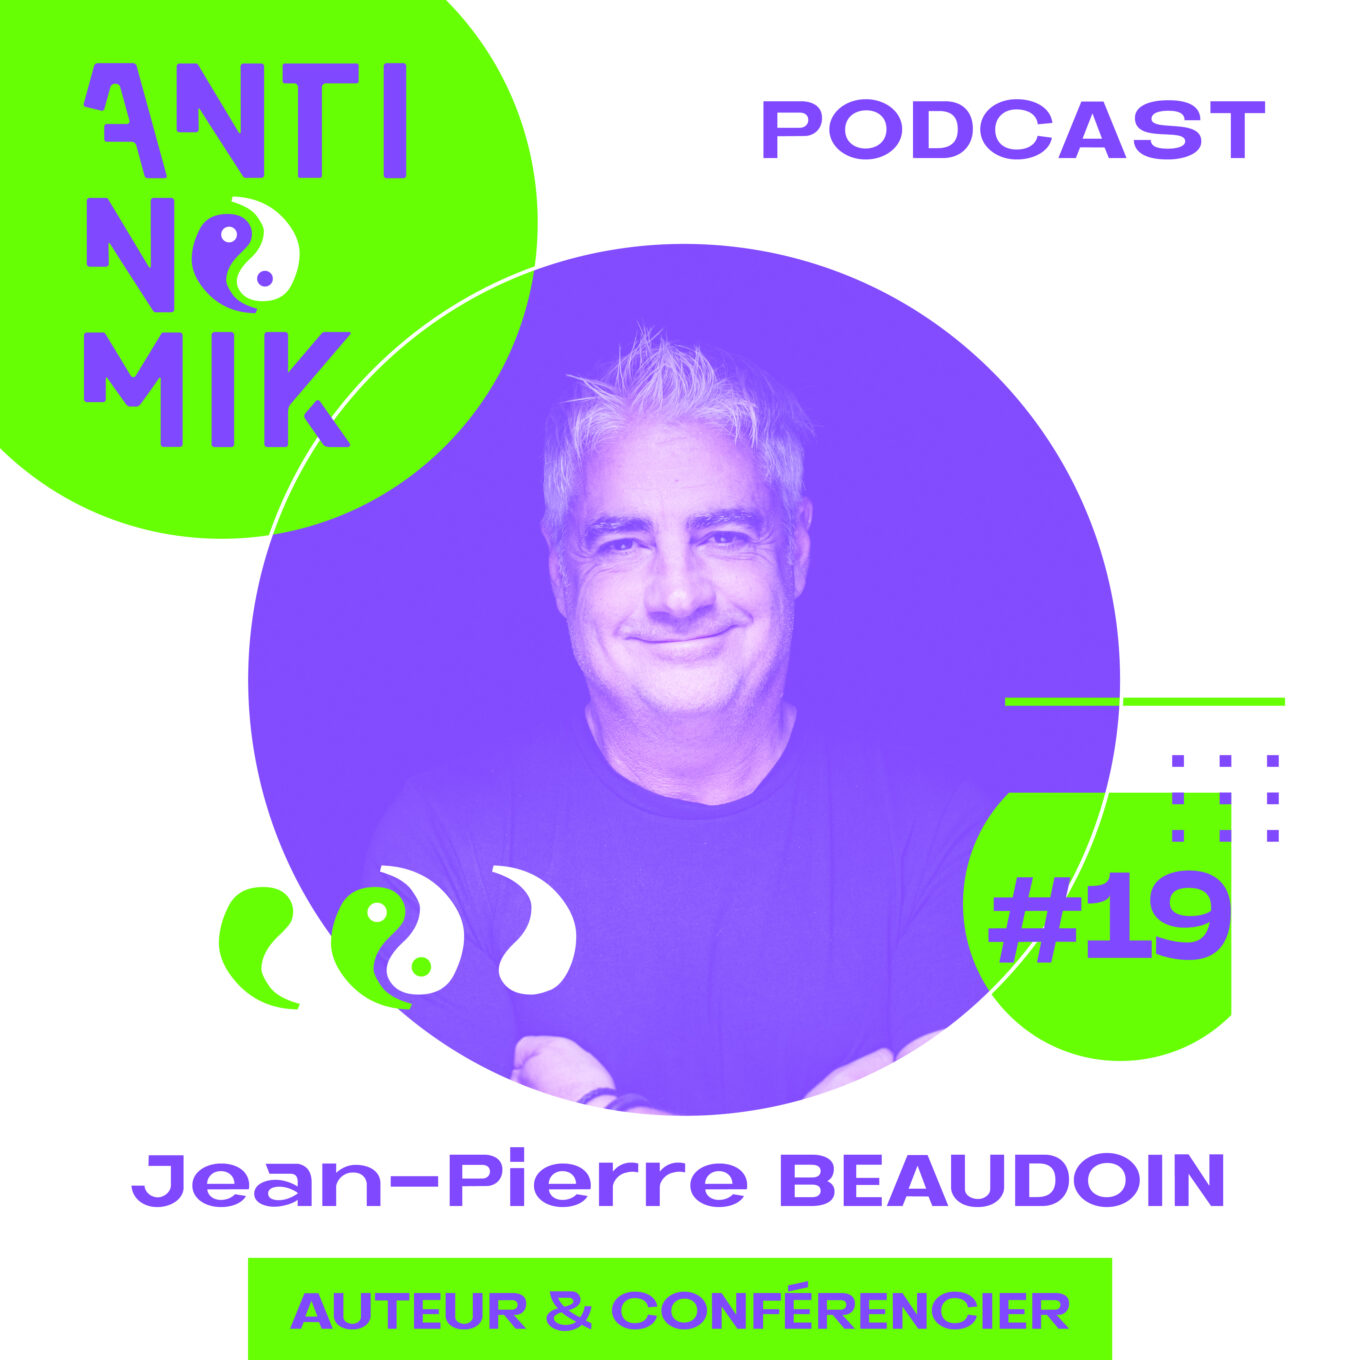 Jean-Pierre BEAUDOIN – Auteur & Conférencier